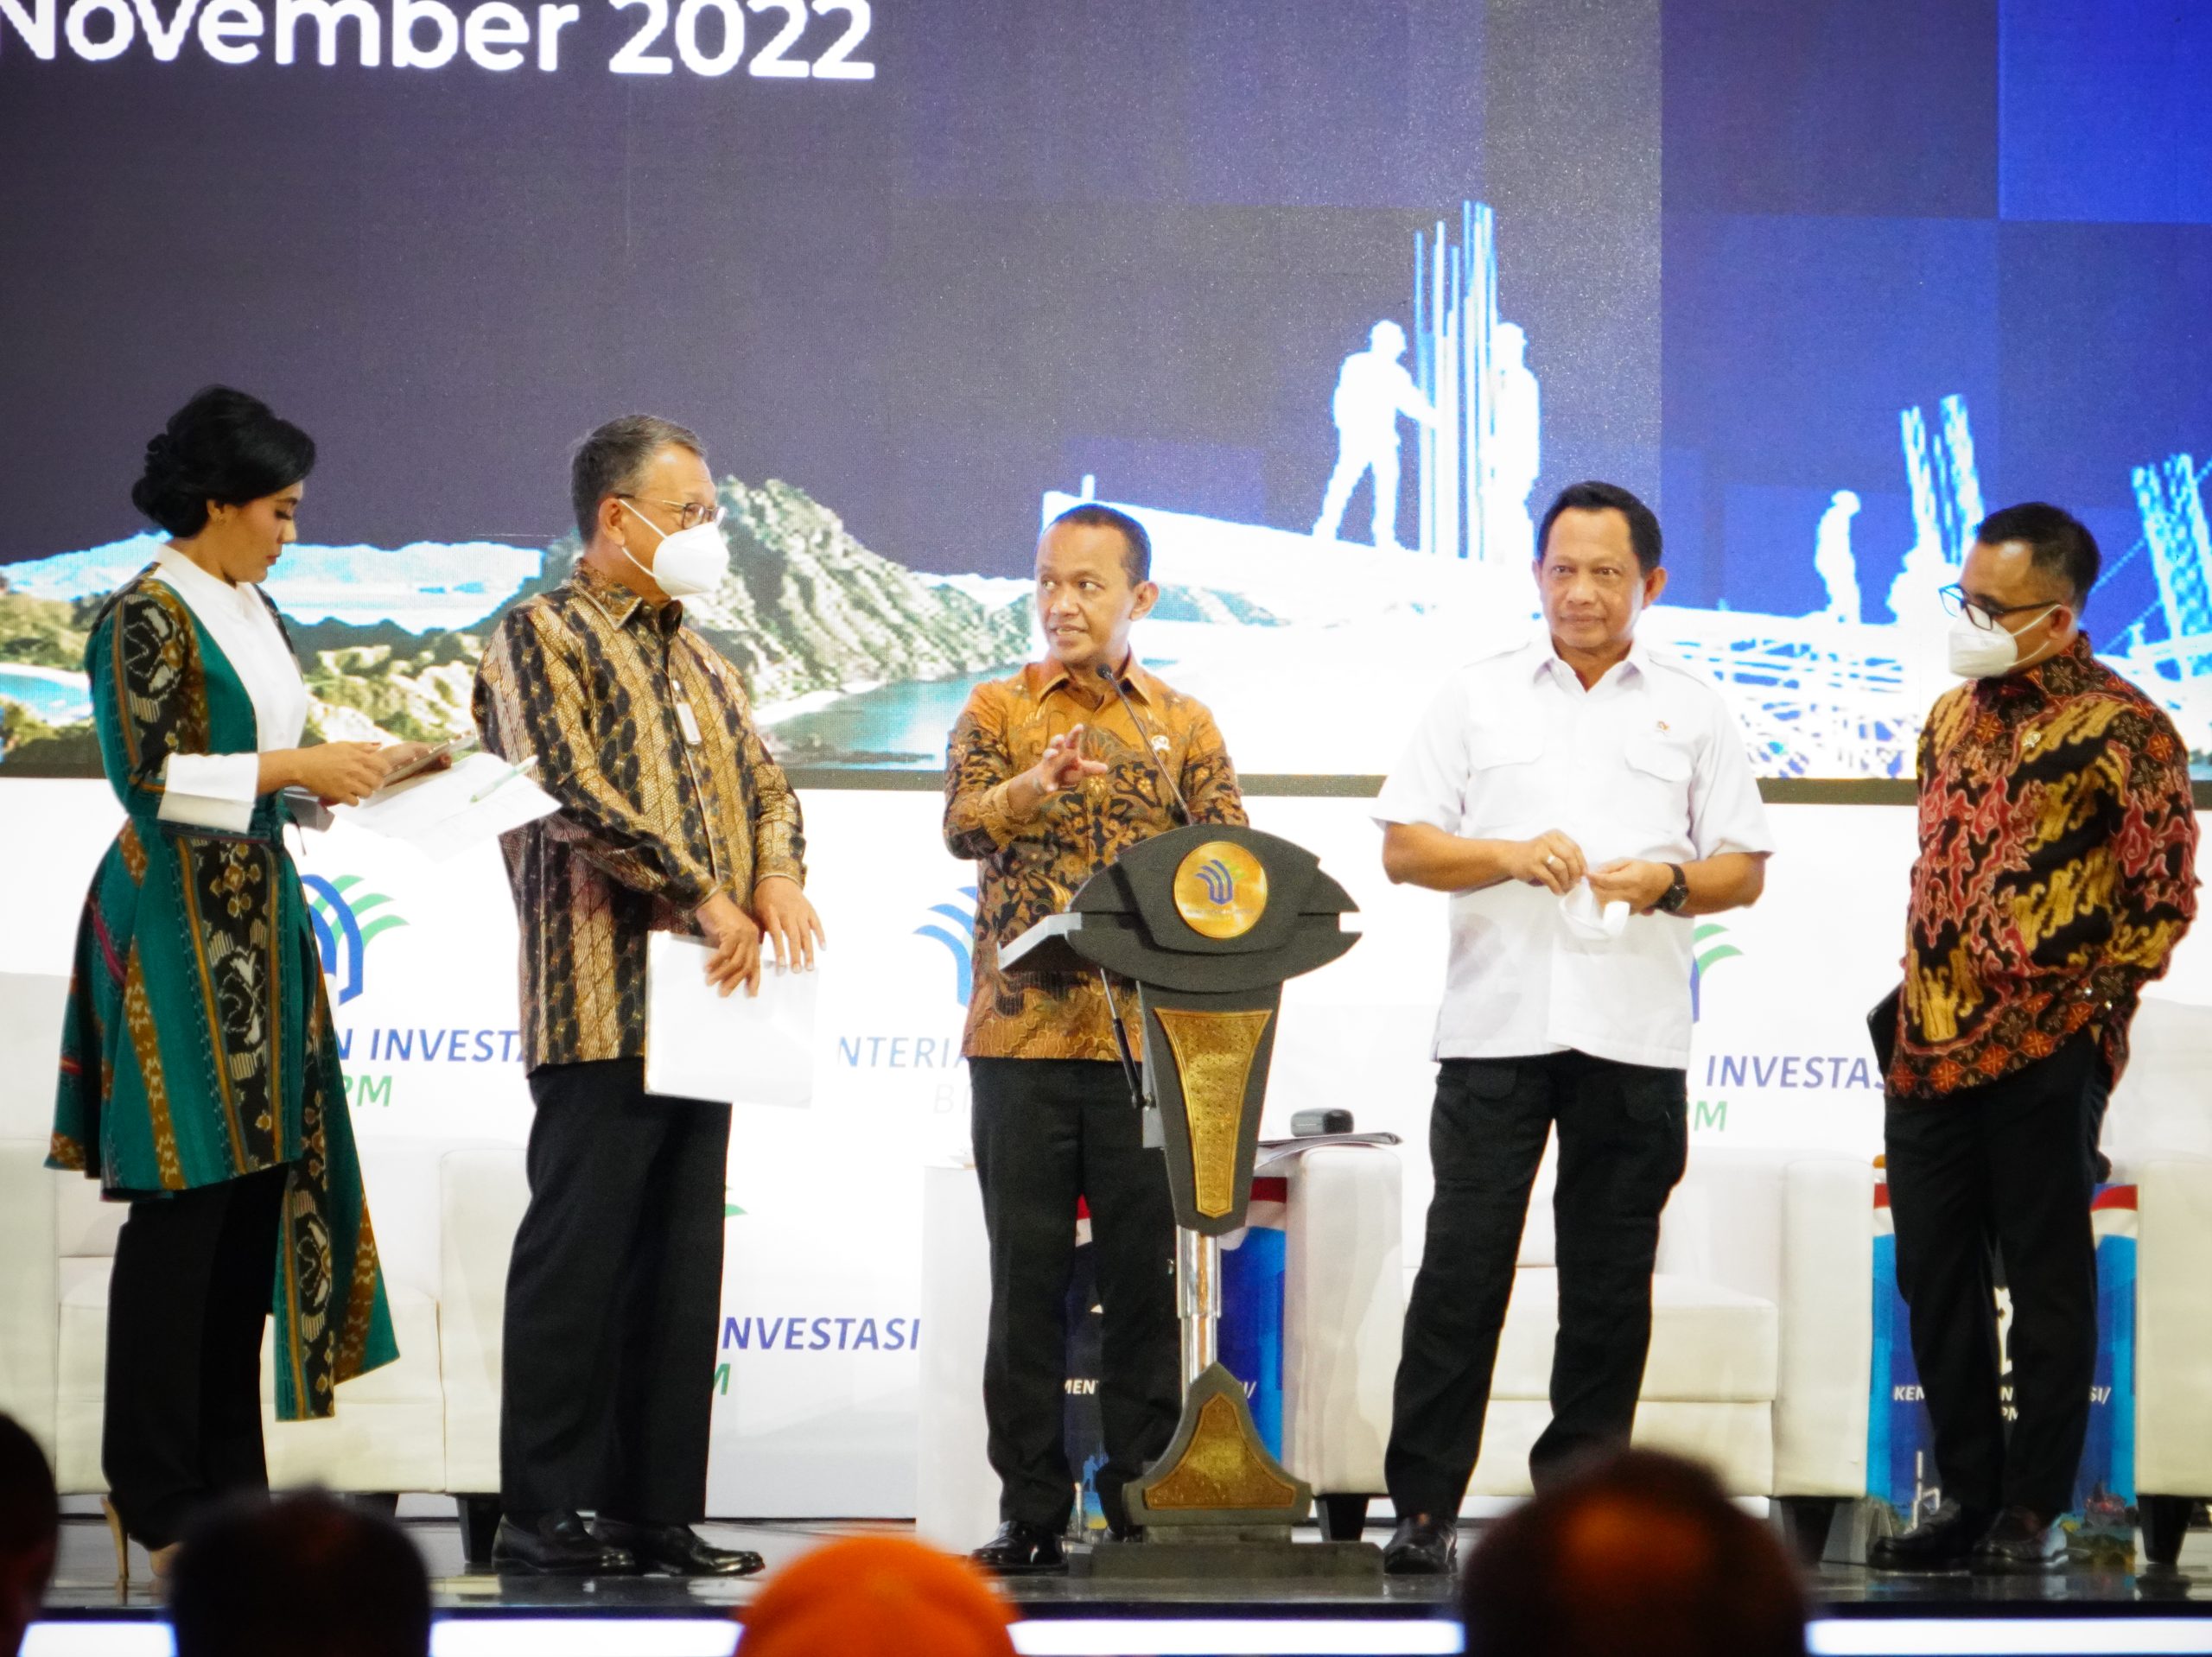 Kementerian Investasi Gandeng Pemerintah Daerah Wujudkan Pemerataan Investasi di Indonesia